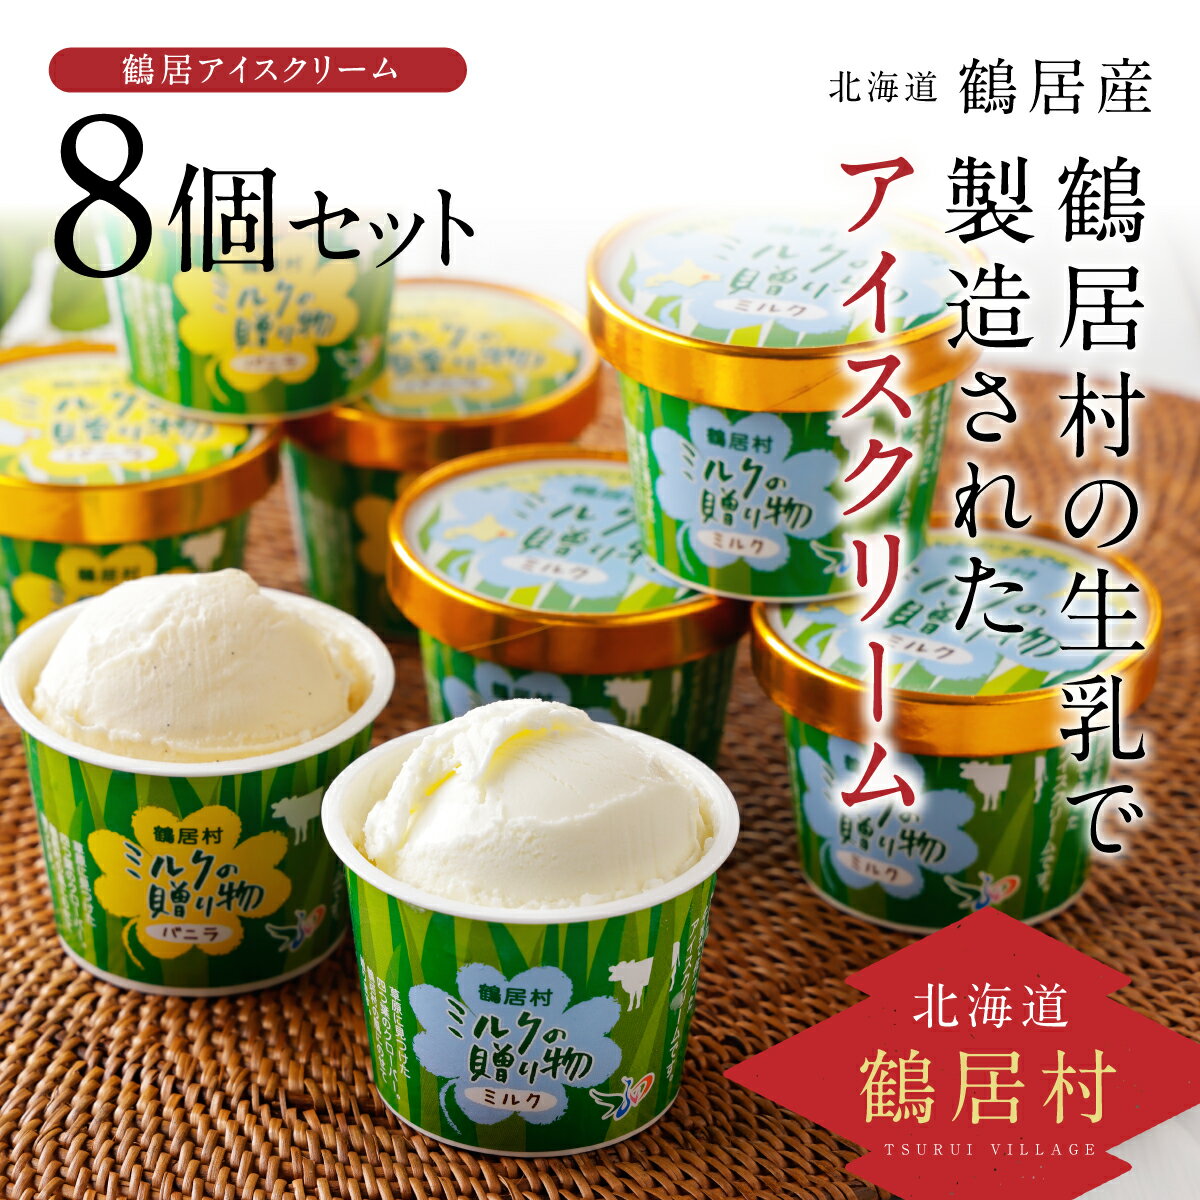 24位! 口コミ数「0件」評価「0」北海道 鶴居村 アイスクリーム ミルクの贈り物 8個セット